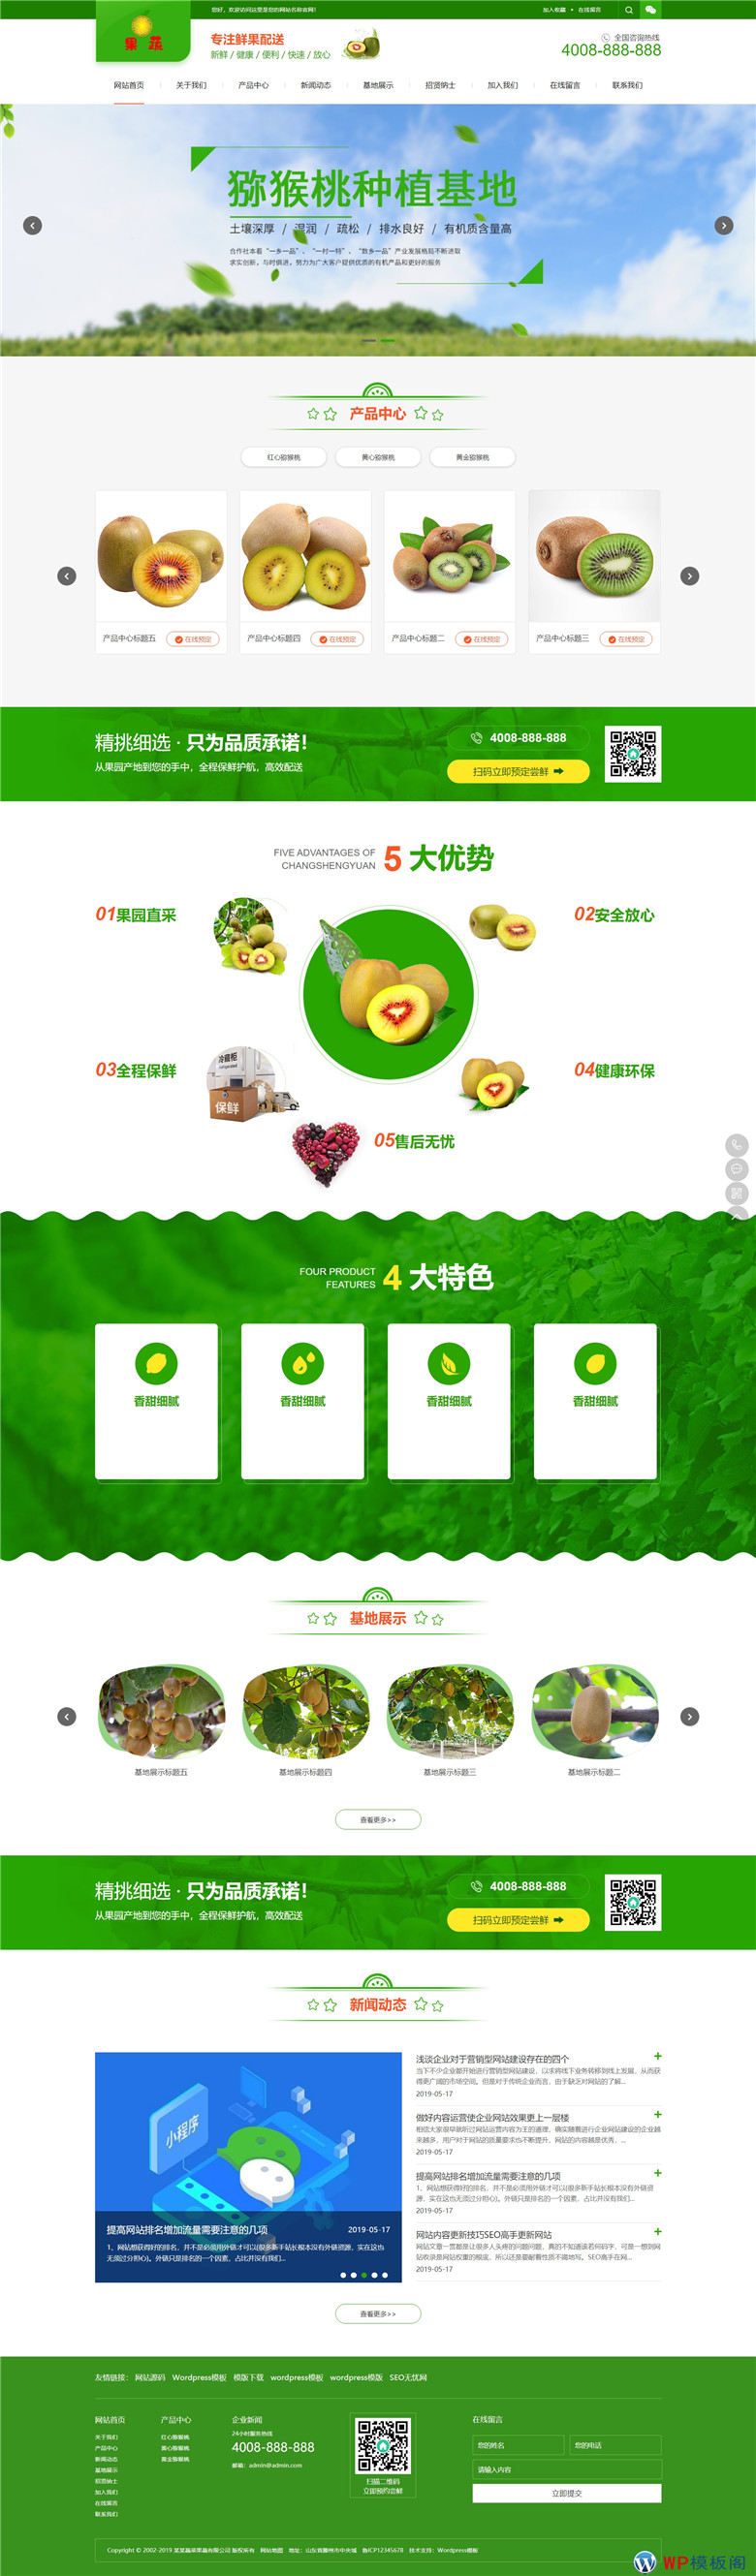 蔬菜果蔬鲜果配送绿色水果种植园下载WordPress网站主题模板演示图